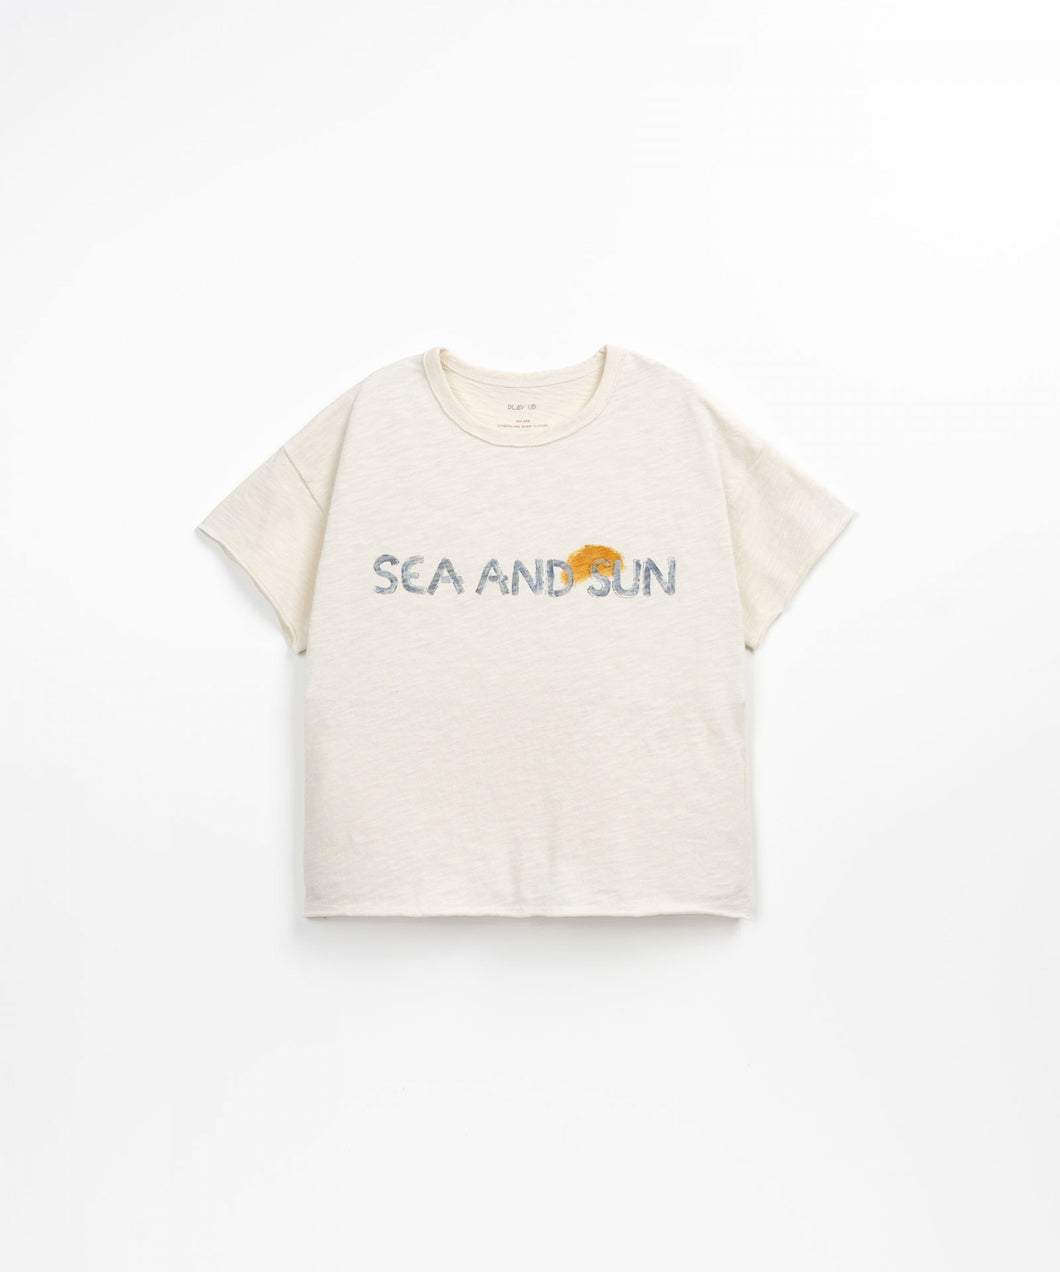 Camiseta Sea and Sun